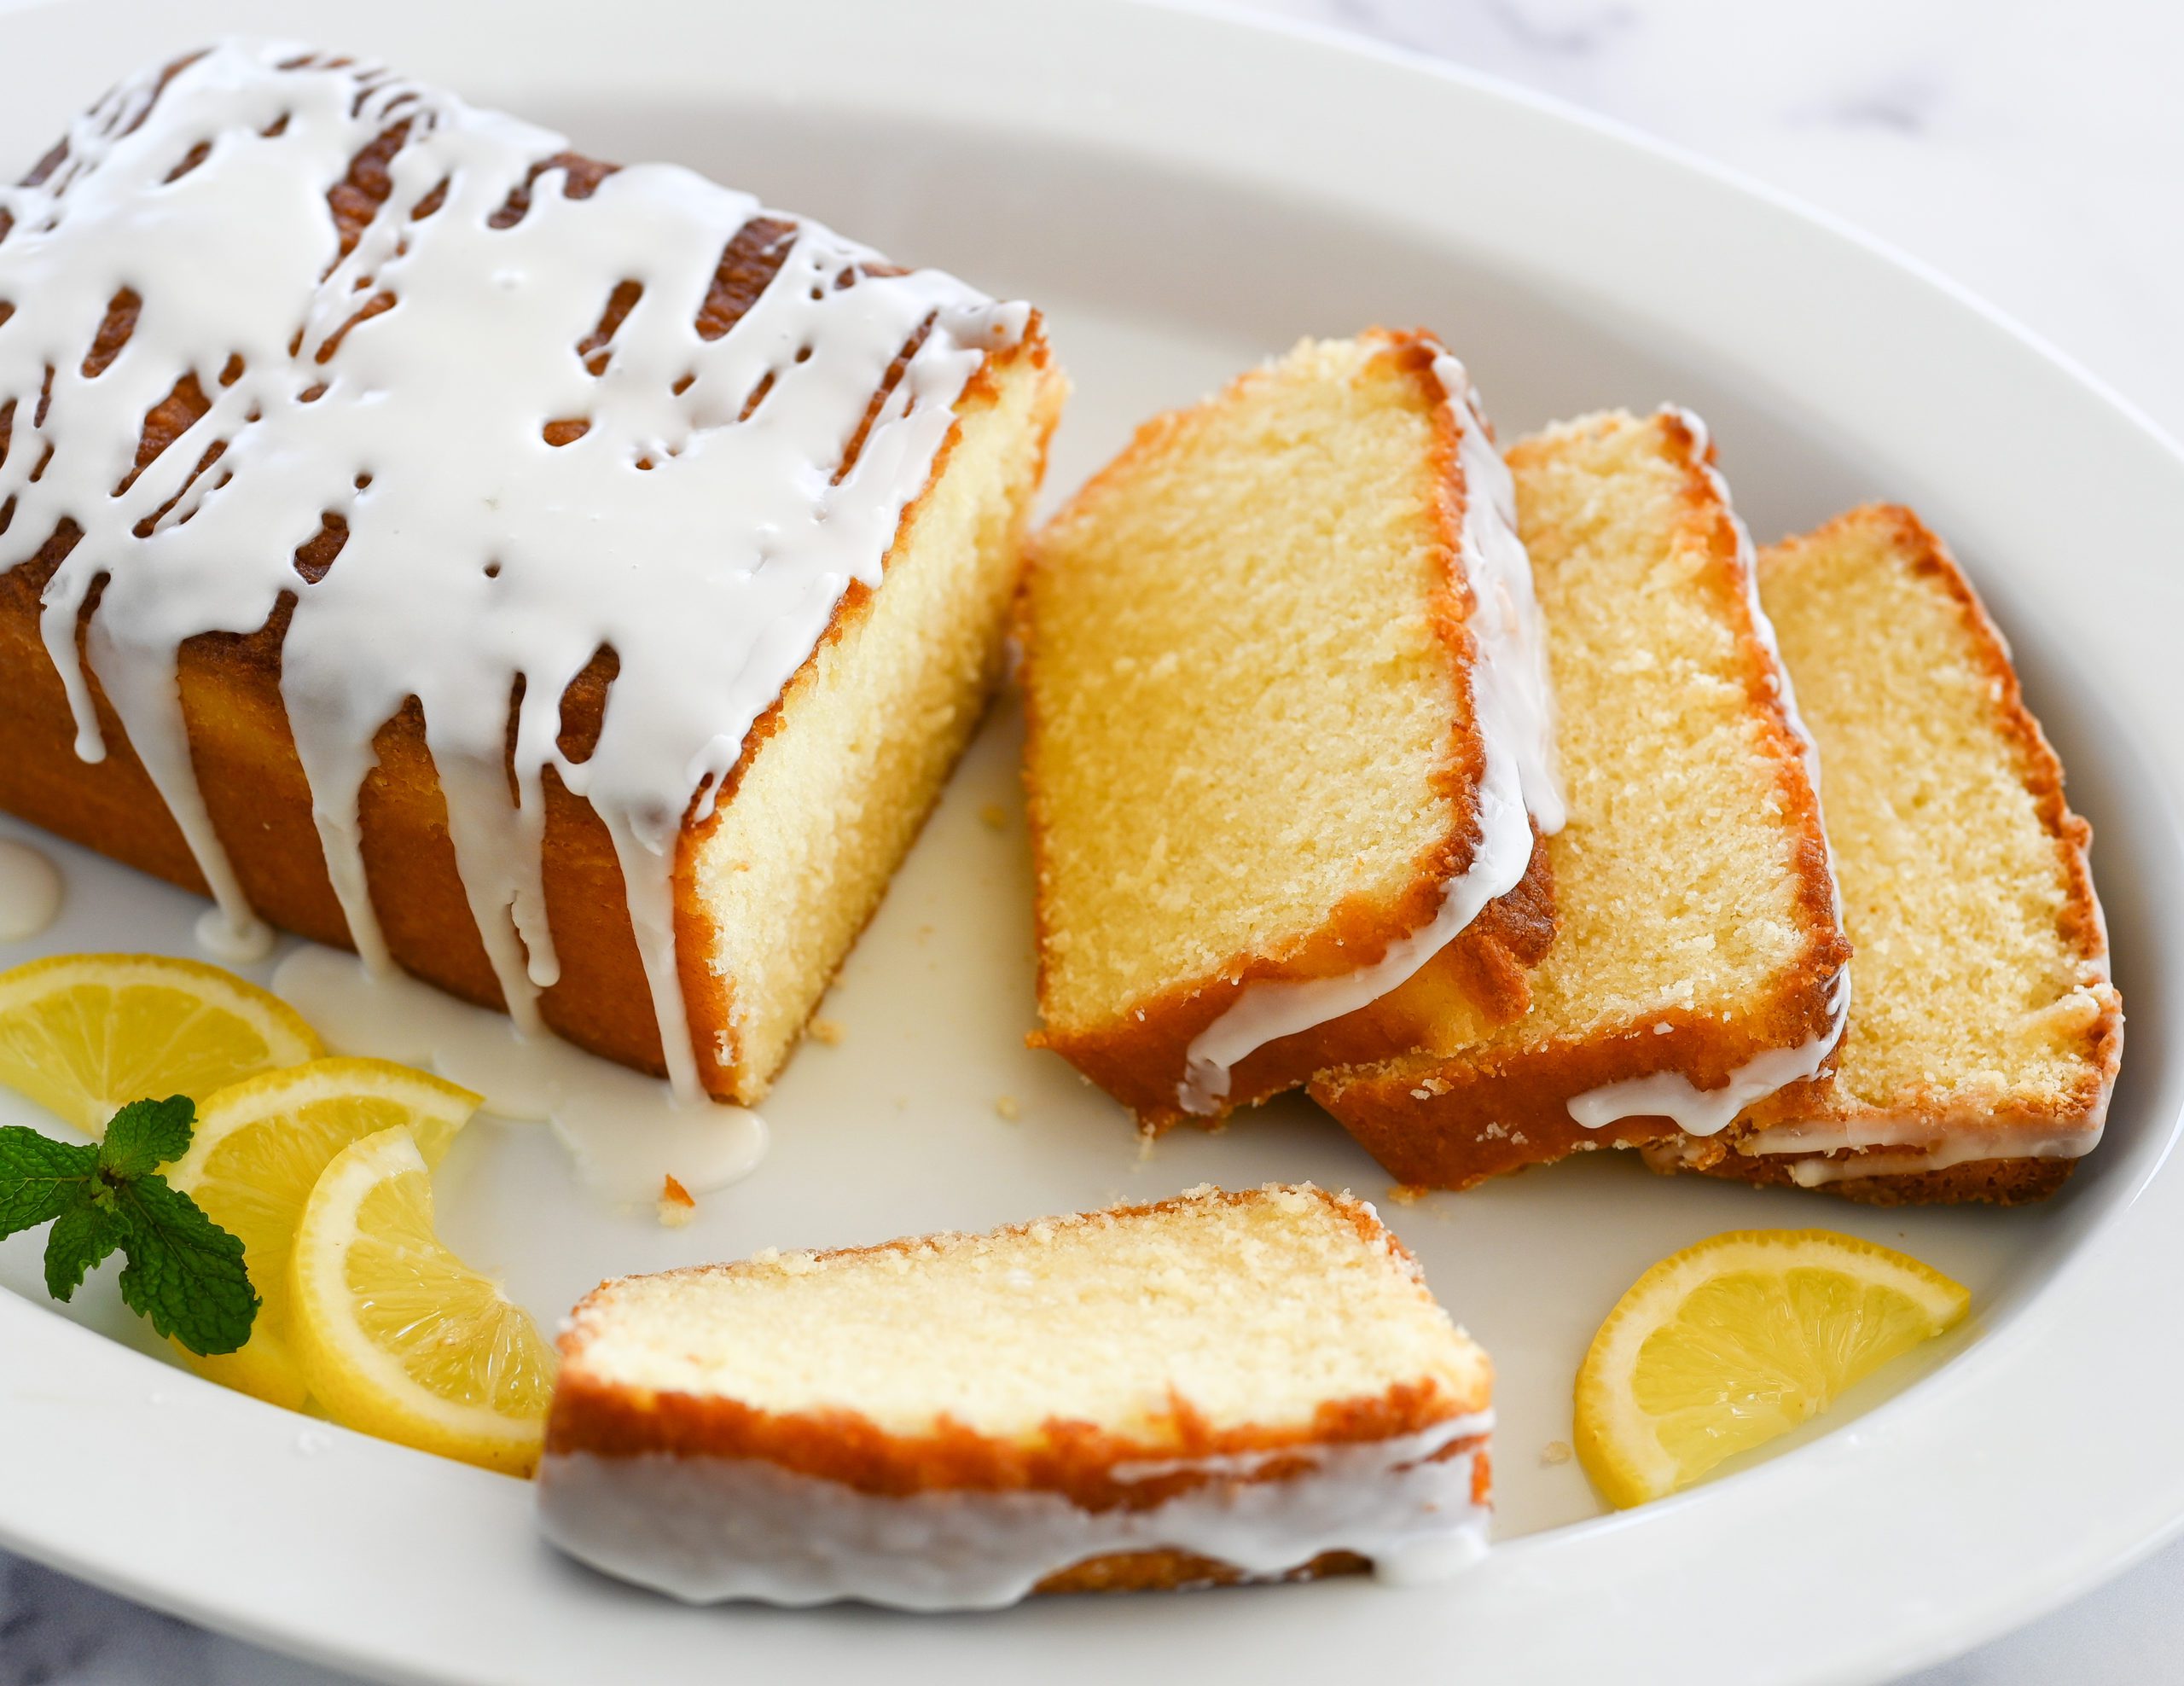 Share 70+ lemon cake taste best